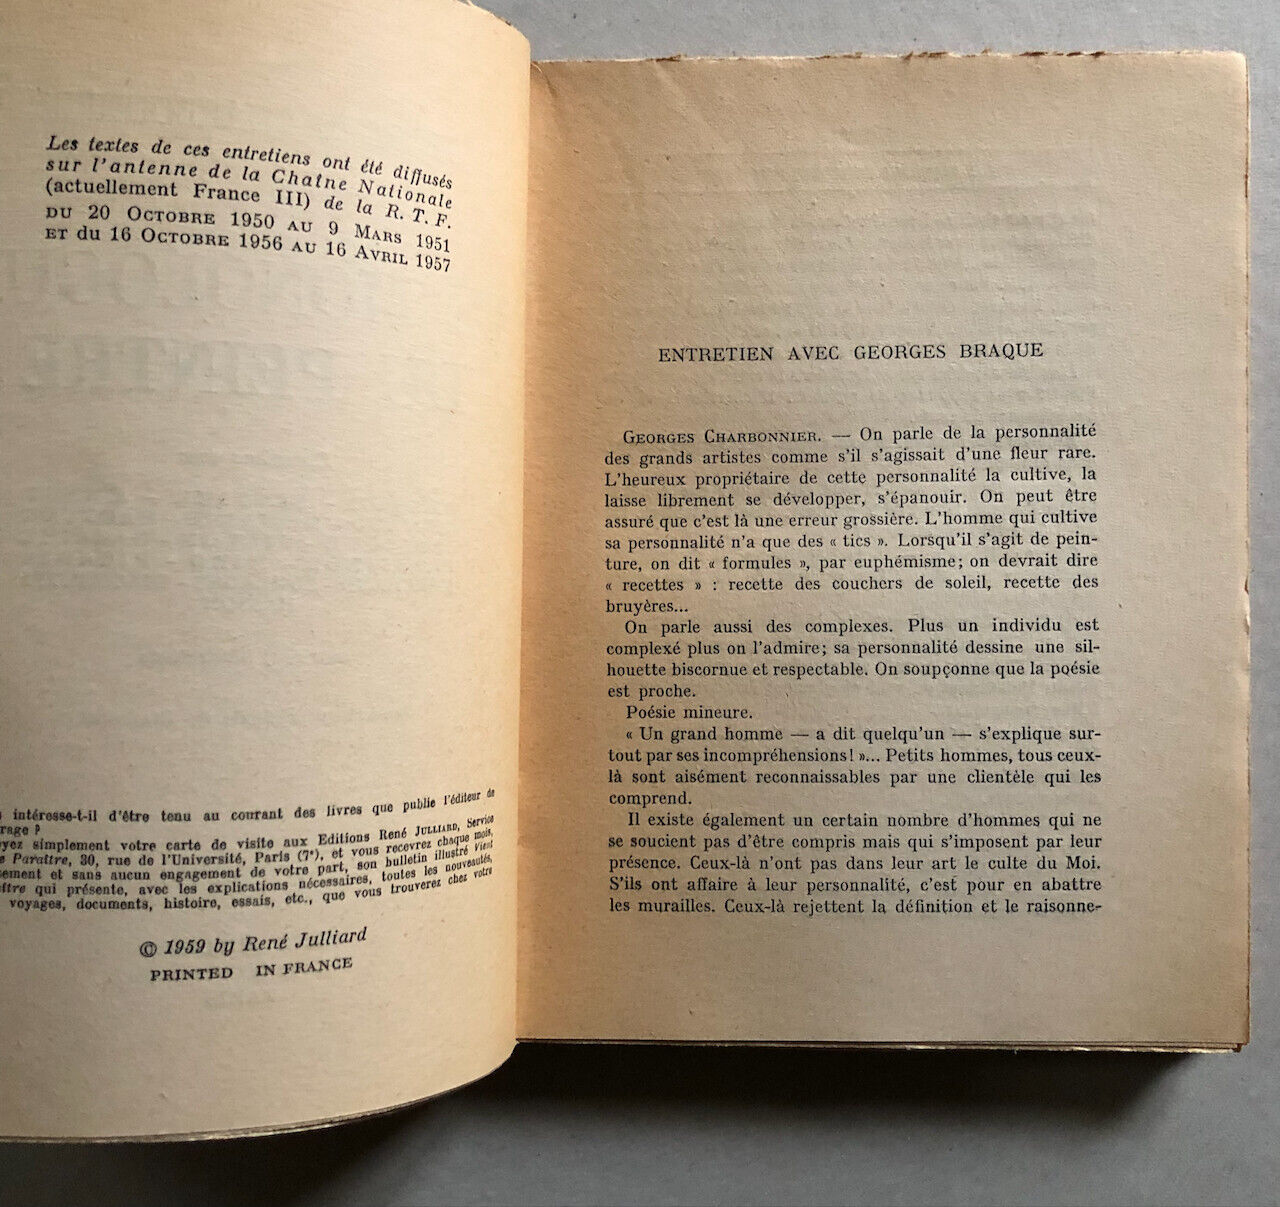 Georges Charbonnier — Le Monologue du peintre — Giacometti, Soulages, Hartung...